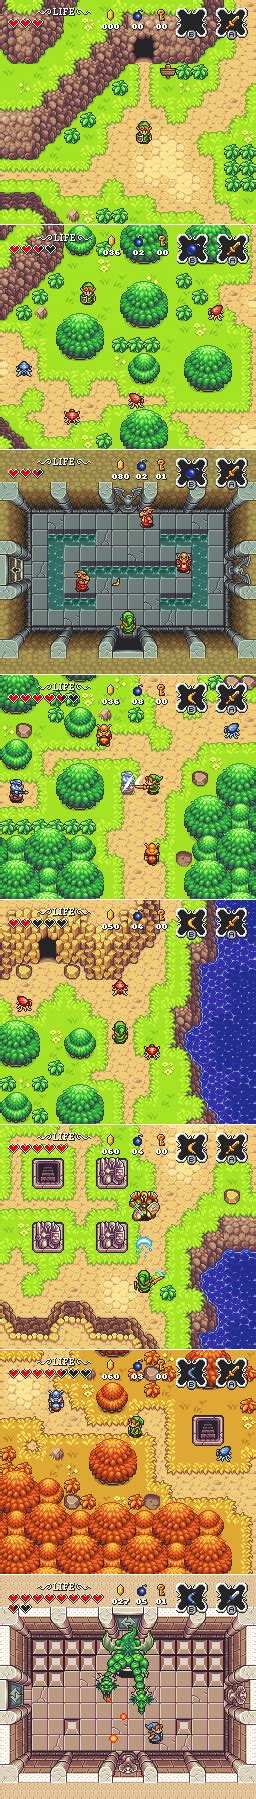 Legend Of Zelda Remake Gamedeveloperjobs Pixel Art